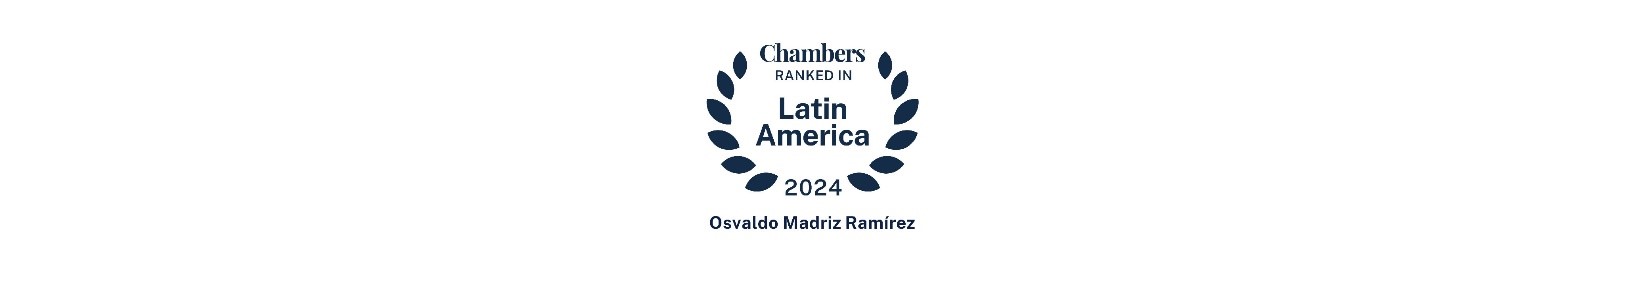 Osvaldo Madriz Ramírez - premios y reconocimientos